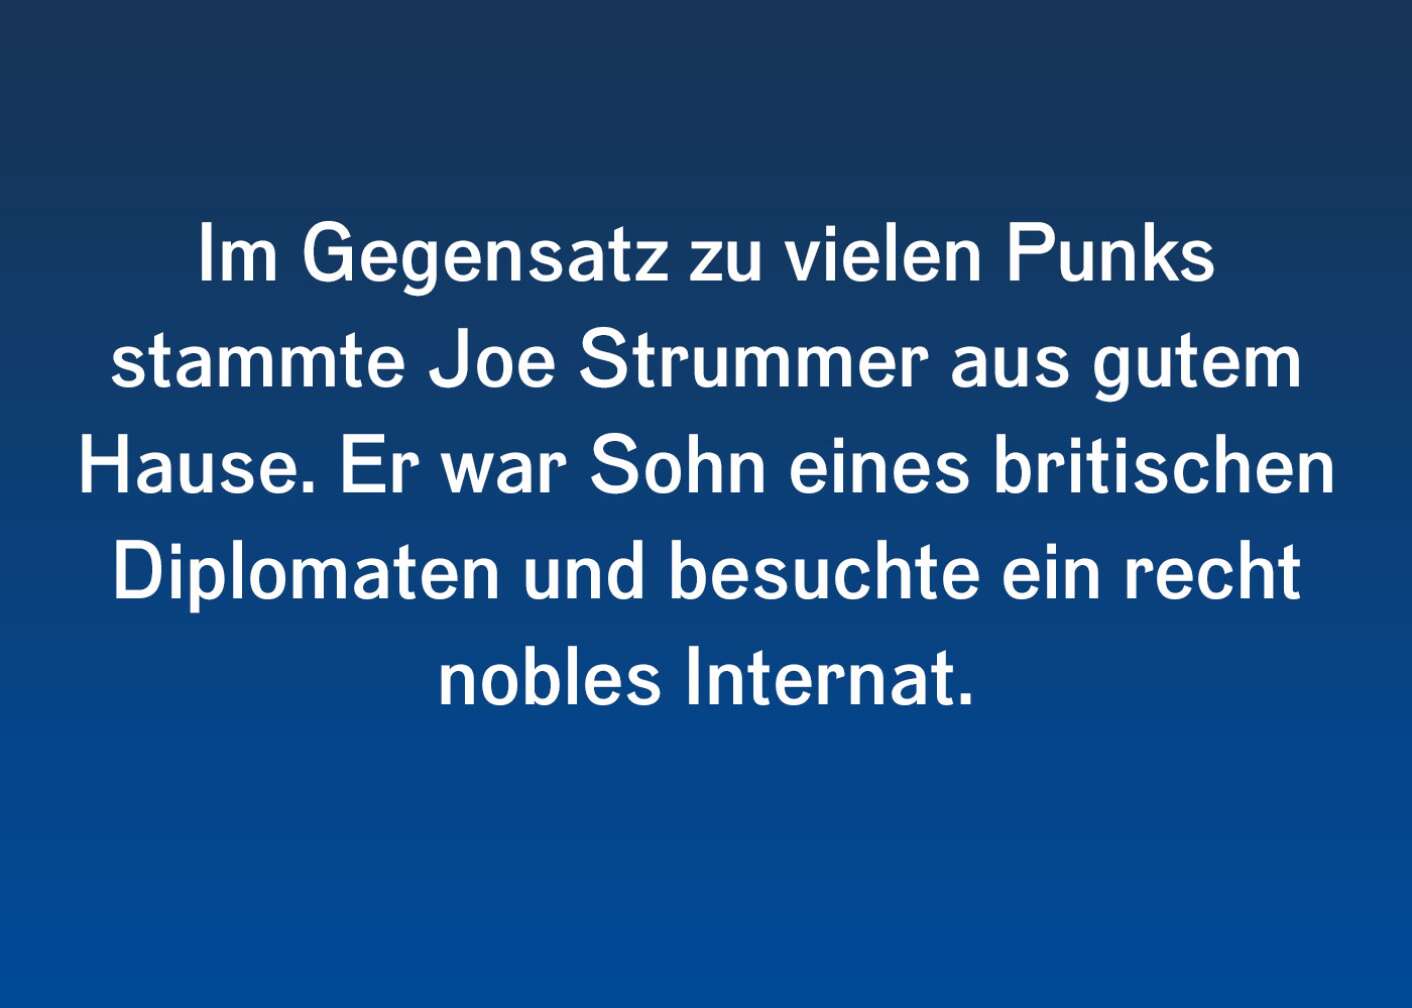 Spannende Fakten zu Joe Strummer